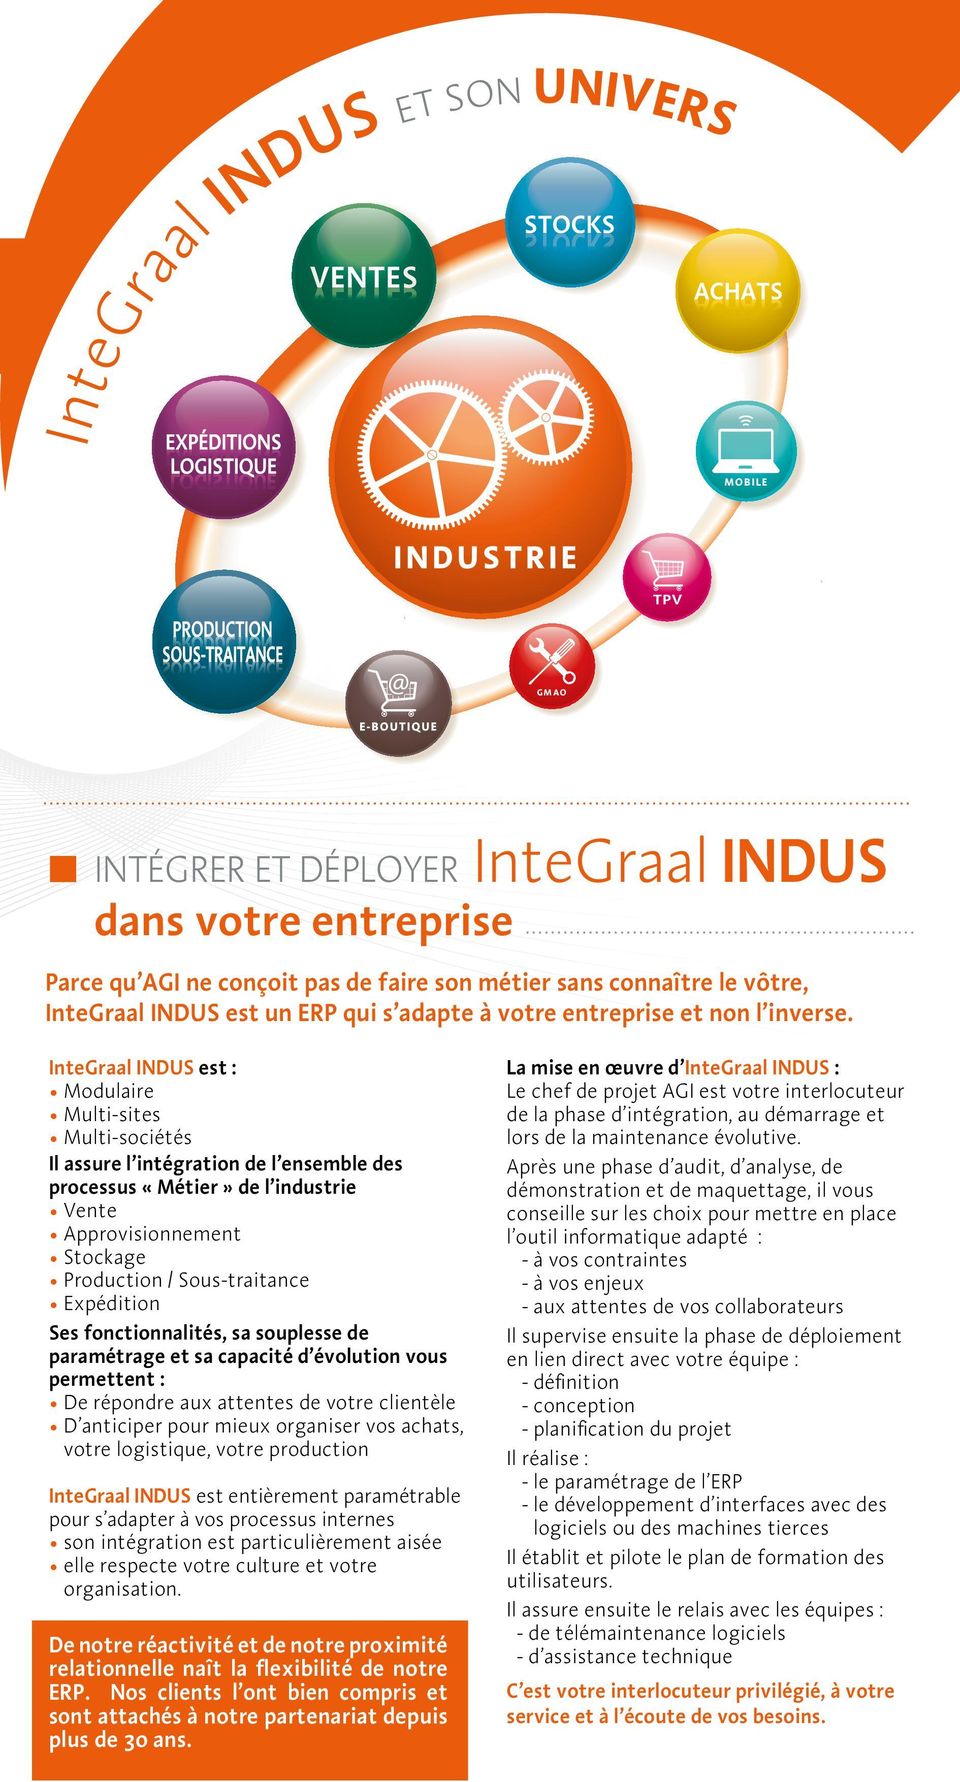 InteGraal INDUS est : Modulaire Multi-sites Multi-sociétés Il assure l intégration de l ensemble des processus «Métier» de l industrie Vente Approvisionnement Stockage Production / Sous-traitance